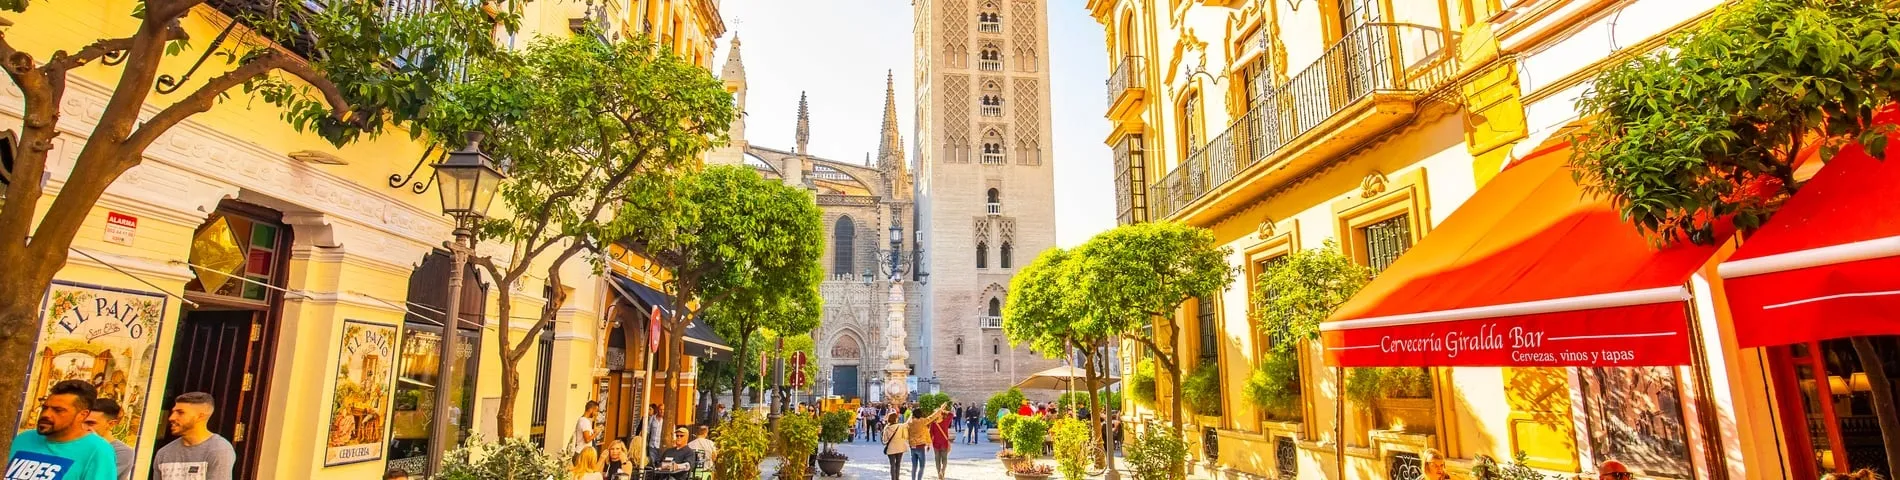 Sevilla - Altres exàmens